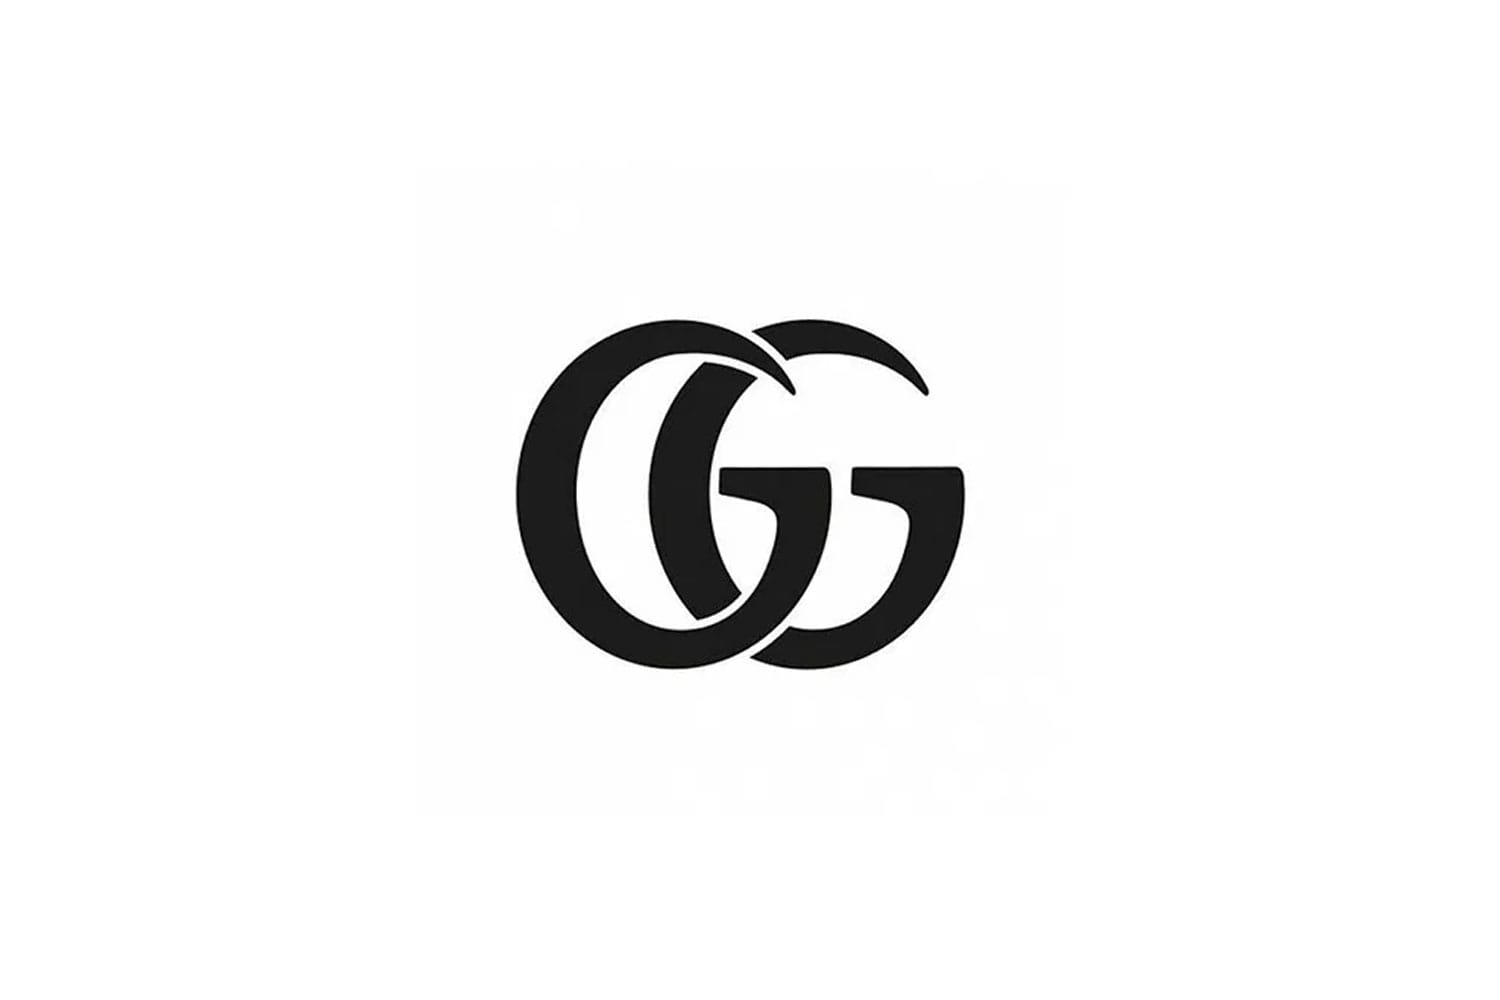 logo brand gucci